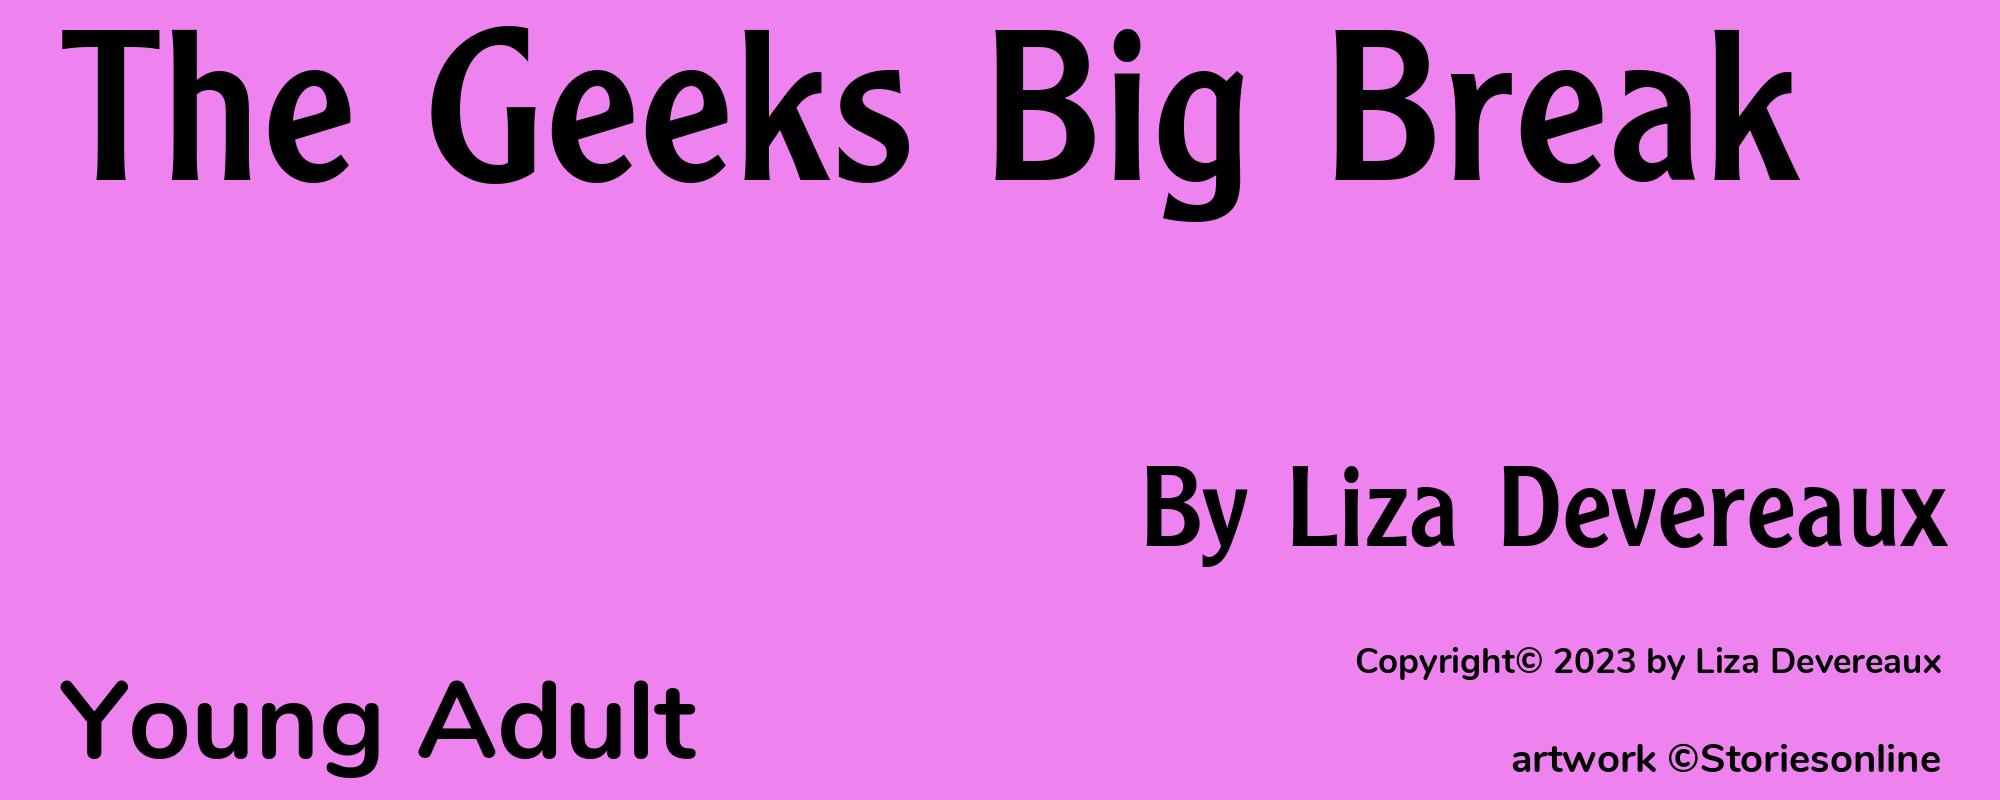 The Geeks Big Break - Cover